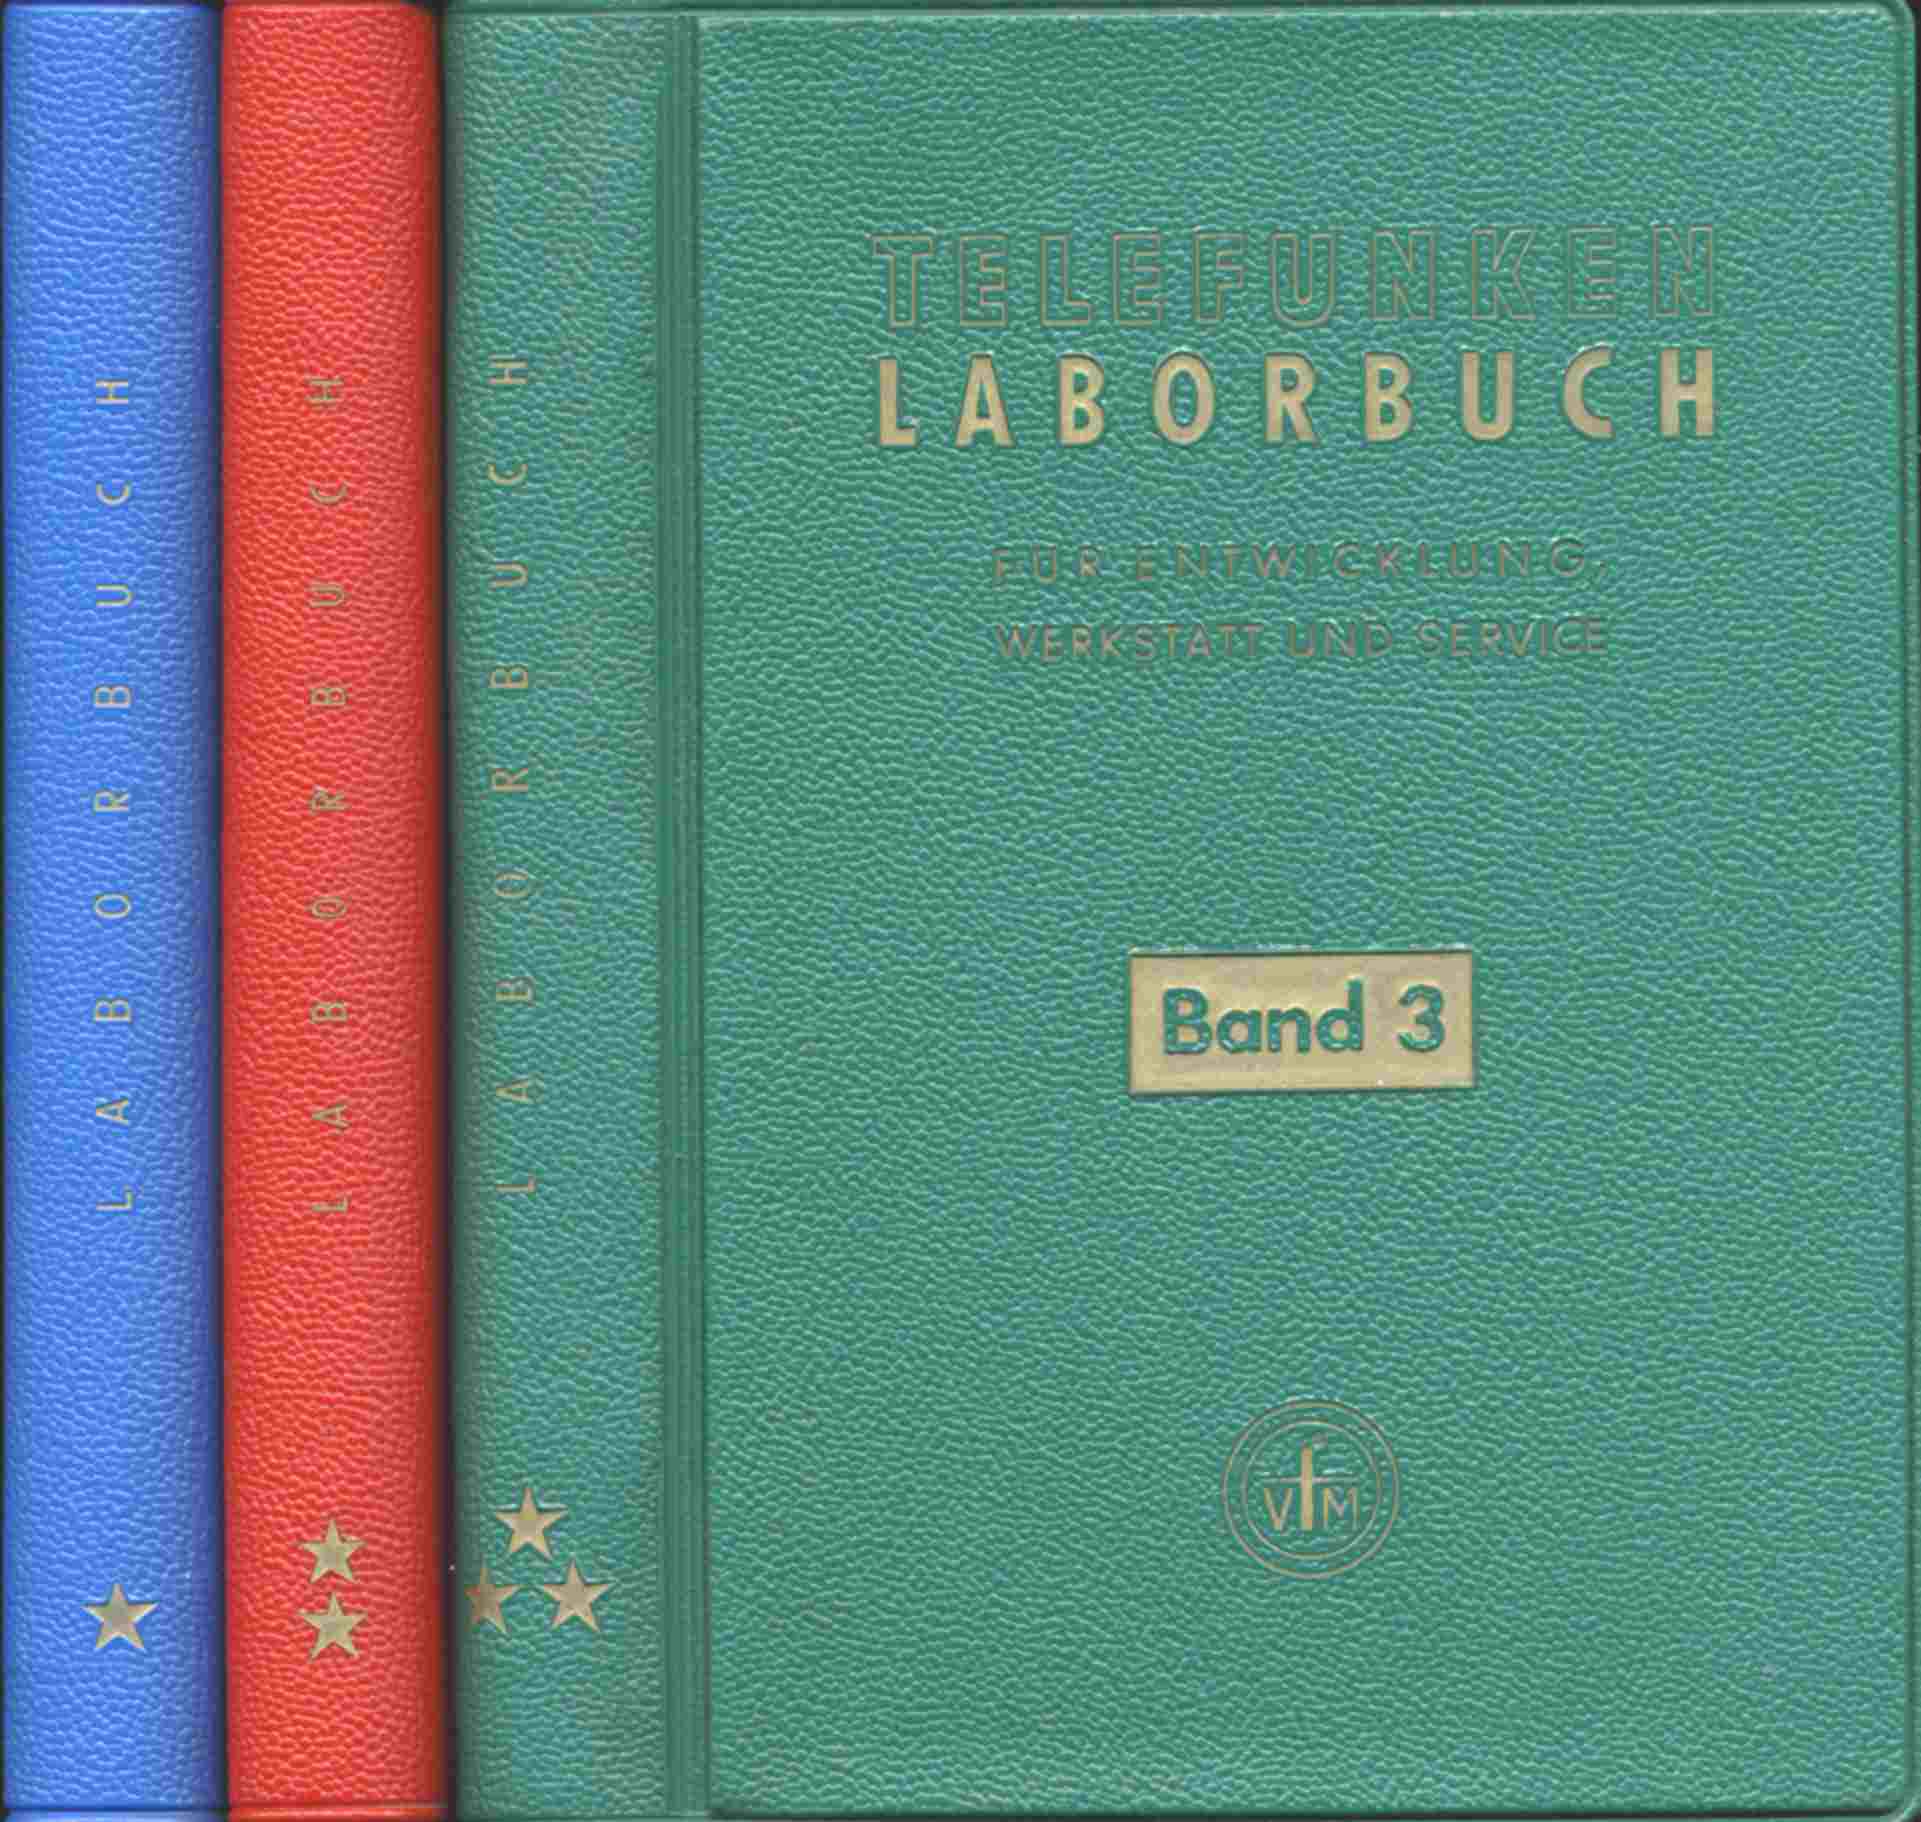   Telefunken-Laborbuch für Entwicklung, Werkstatt und Service. Bände 1-3. 